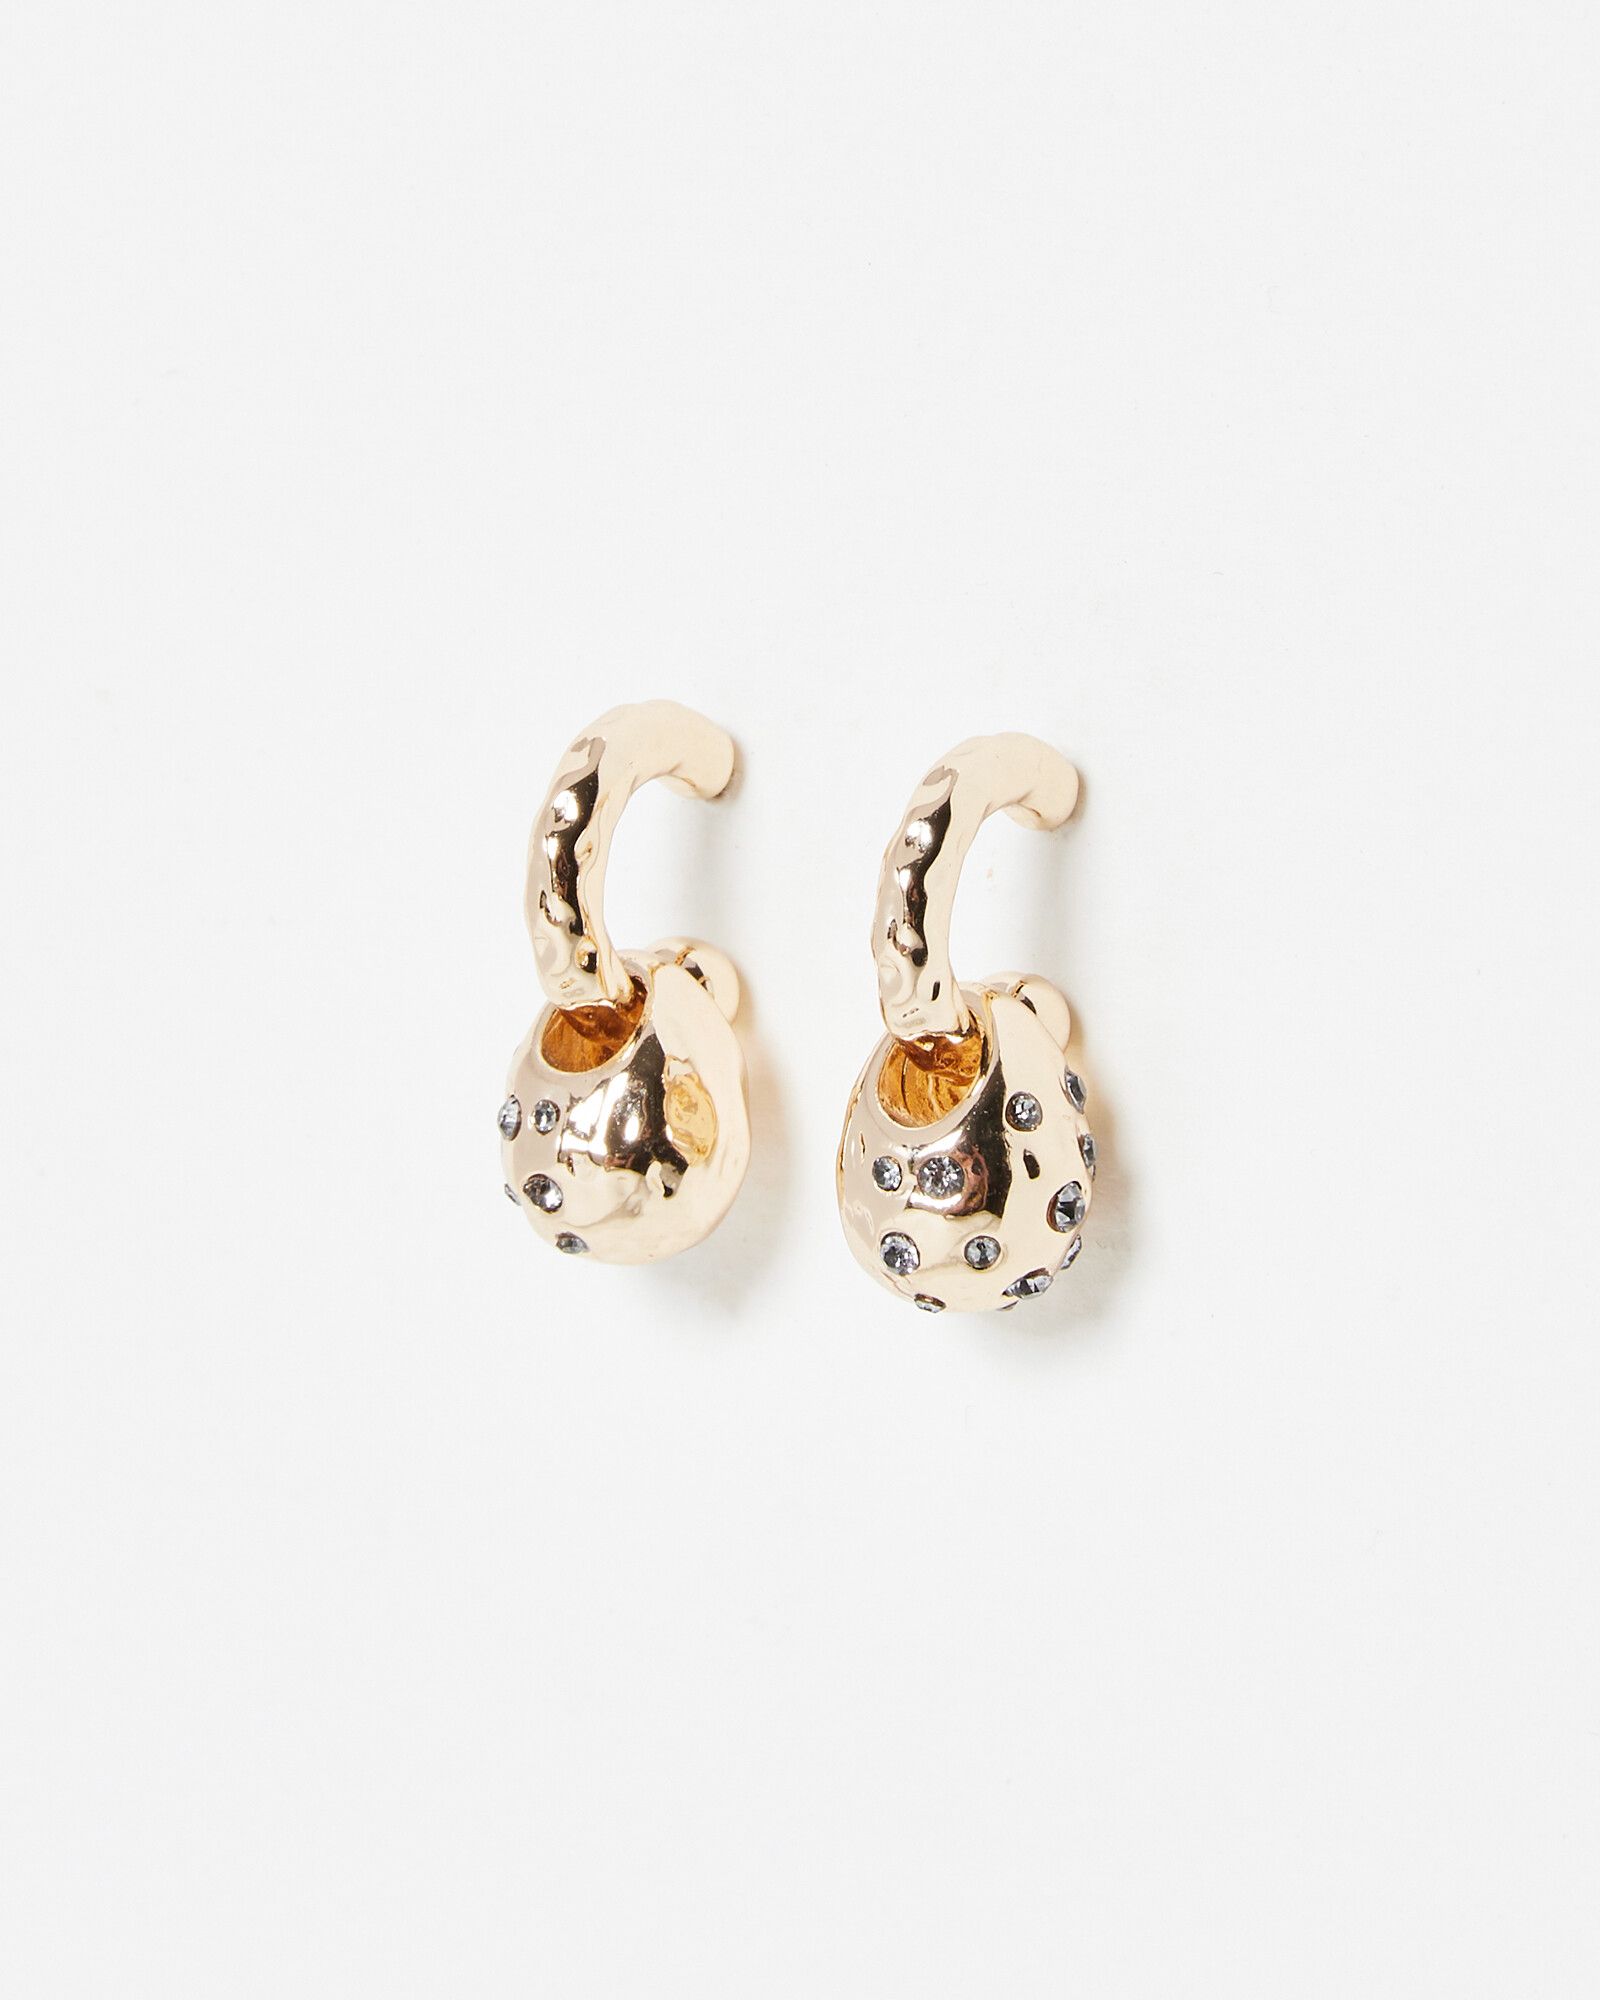 Louis Vuitton Monogram Inclusion Hoop Earrings - Gold-Tone Metal